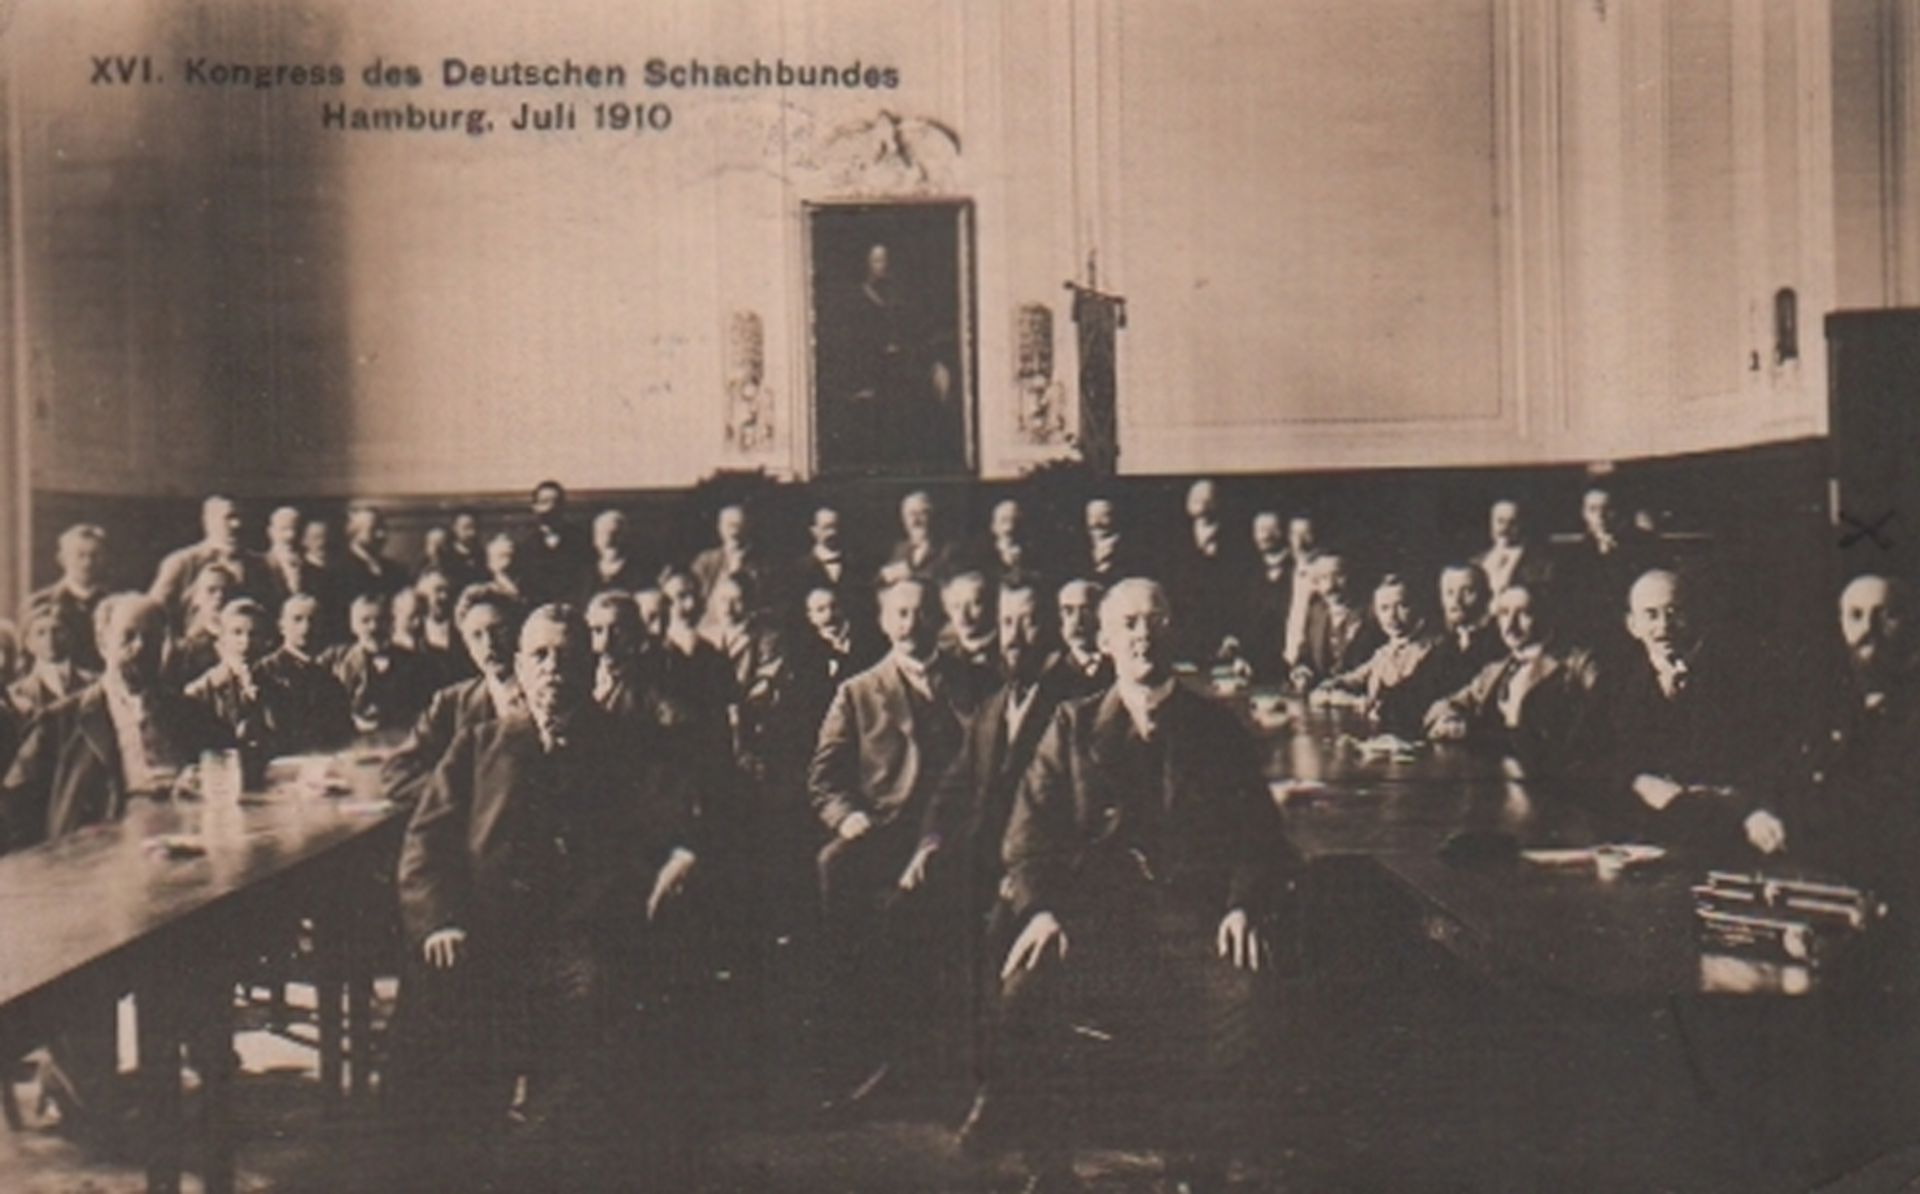 Postkarte. Hamburg 1910. Postalisch gelaufene schwarzweiße Fotopostkarte aus der Zeit um 1910 mit